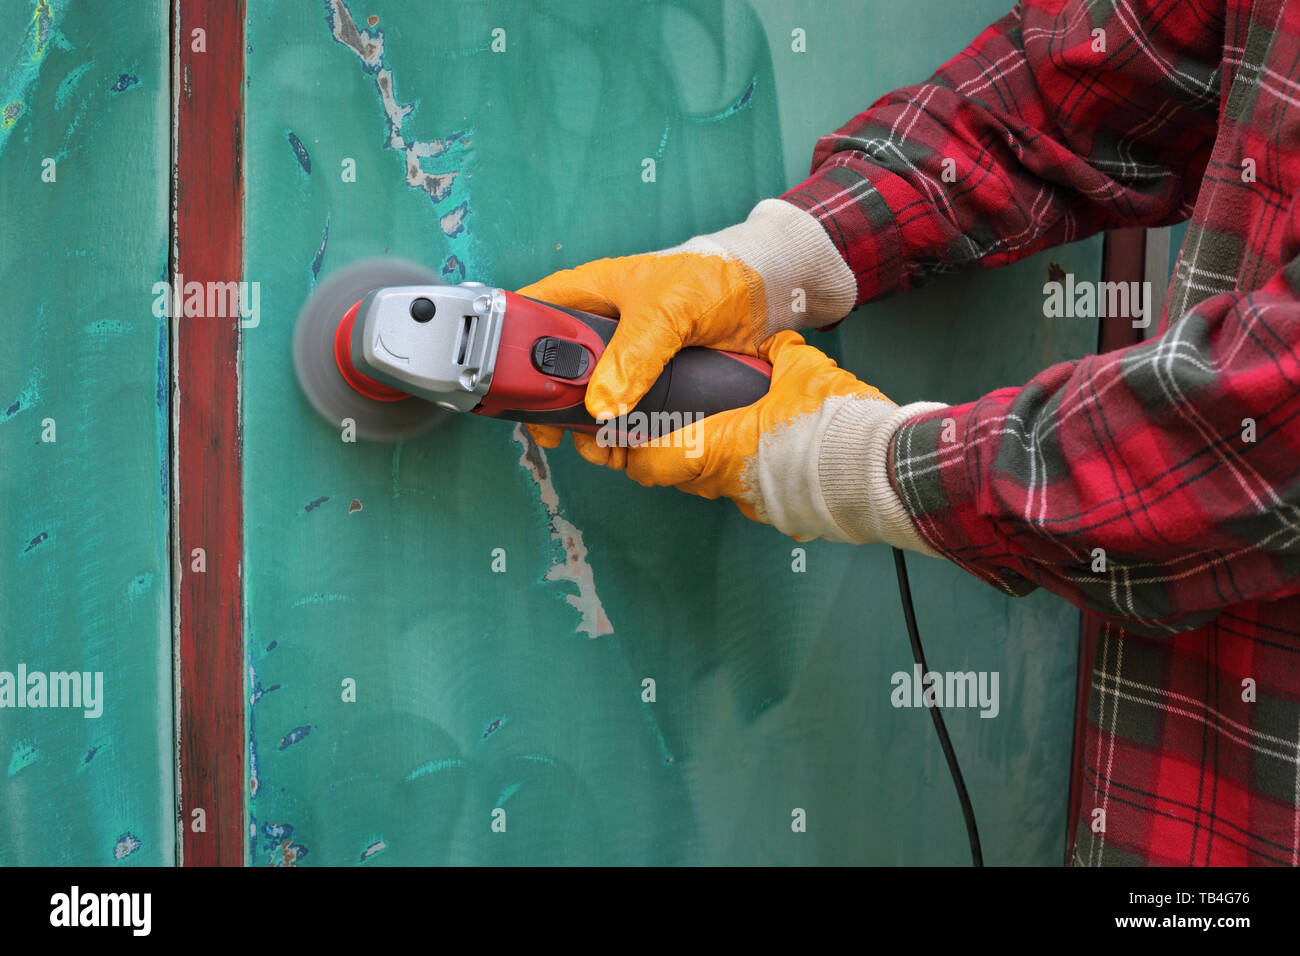 Farbe und Rost entfernen aus Blech, mit Drahtbürste an Grinder Power Tool  Arbeitnehmer Stockfotografie - Alamy